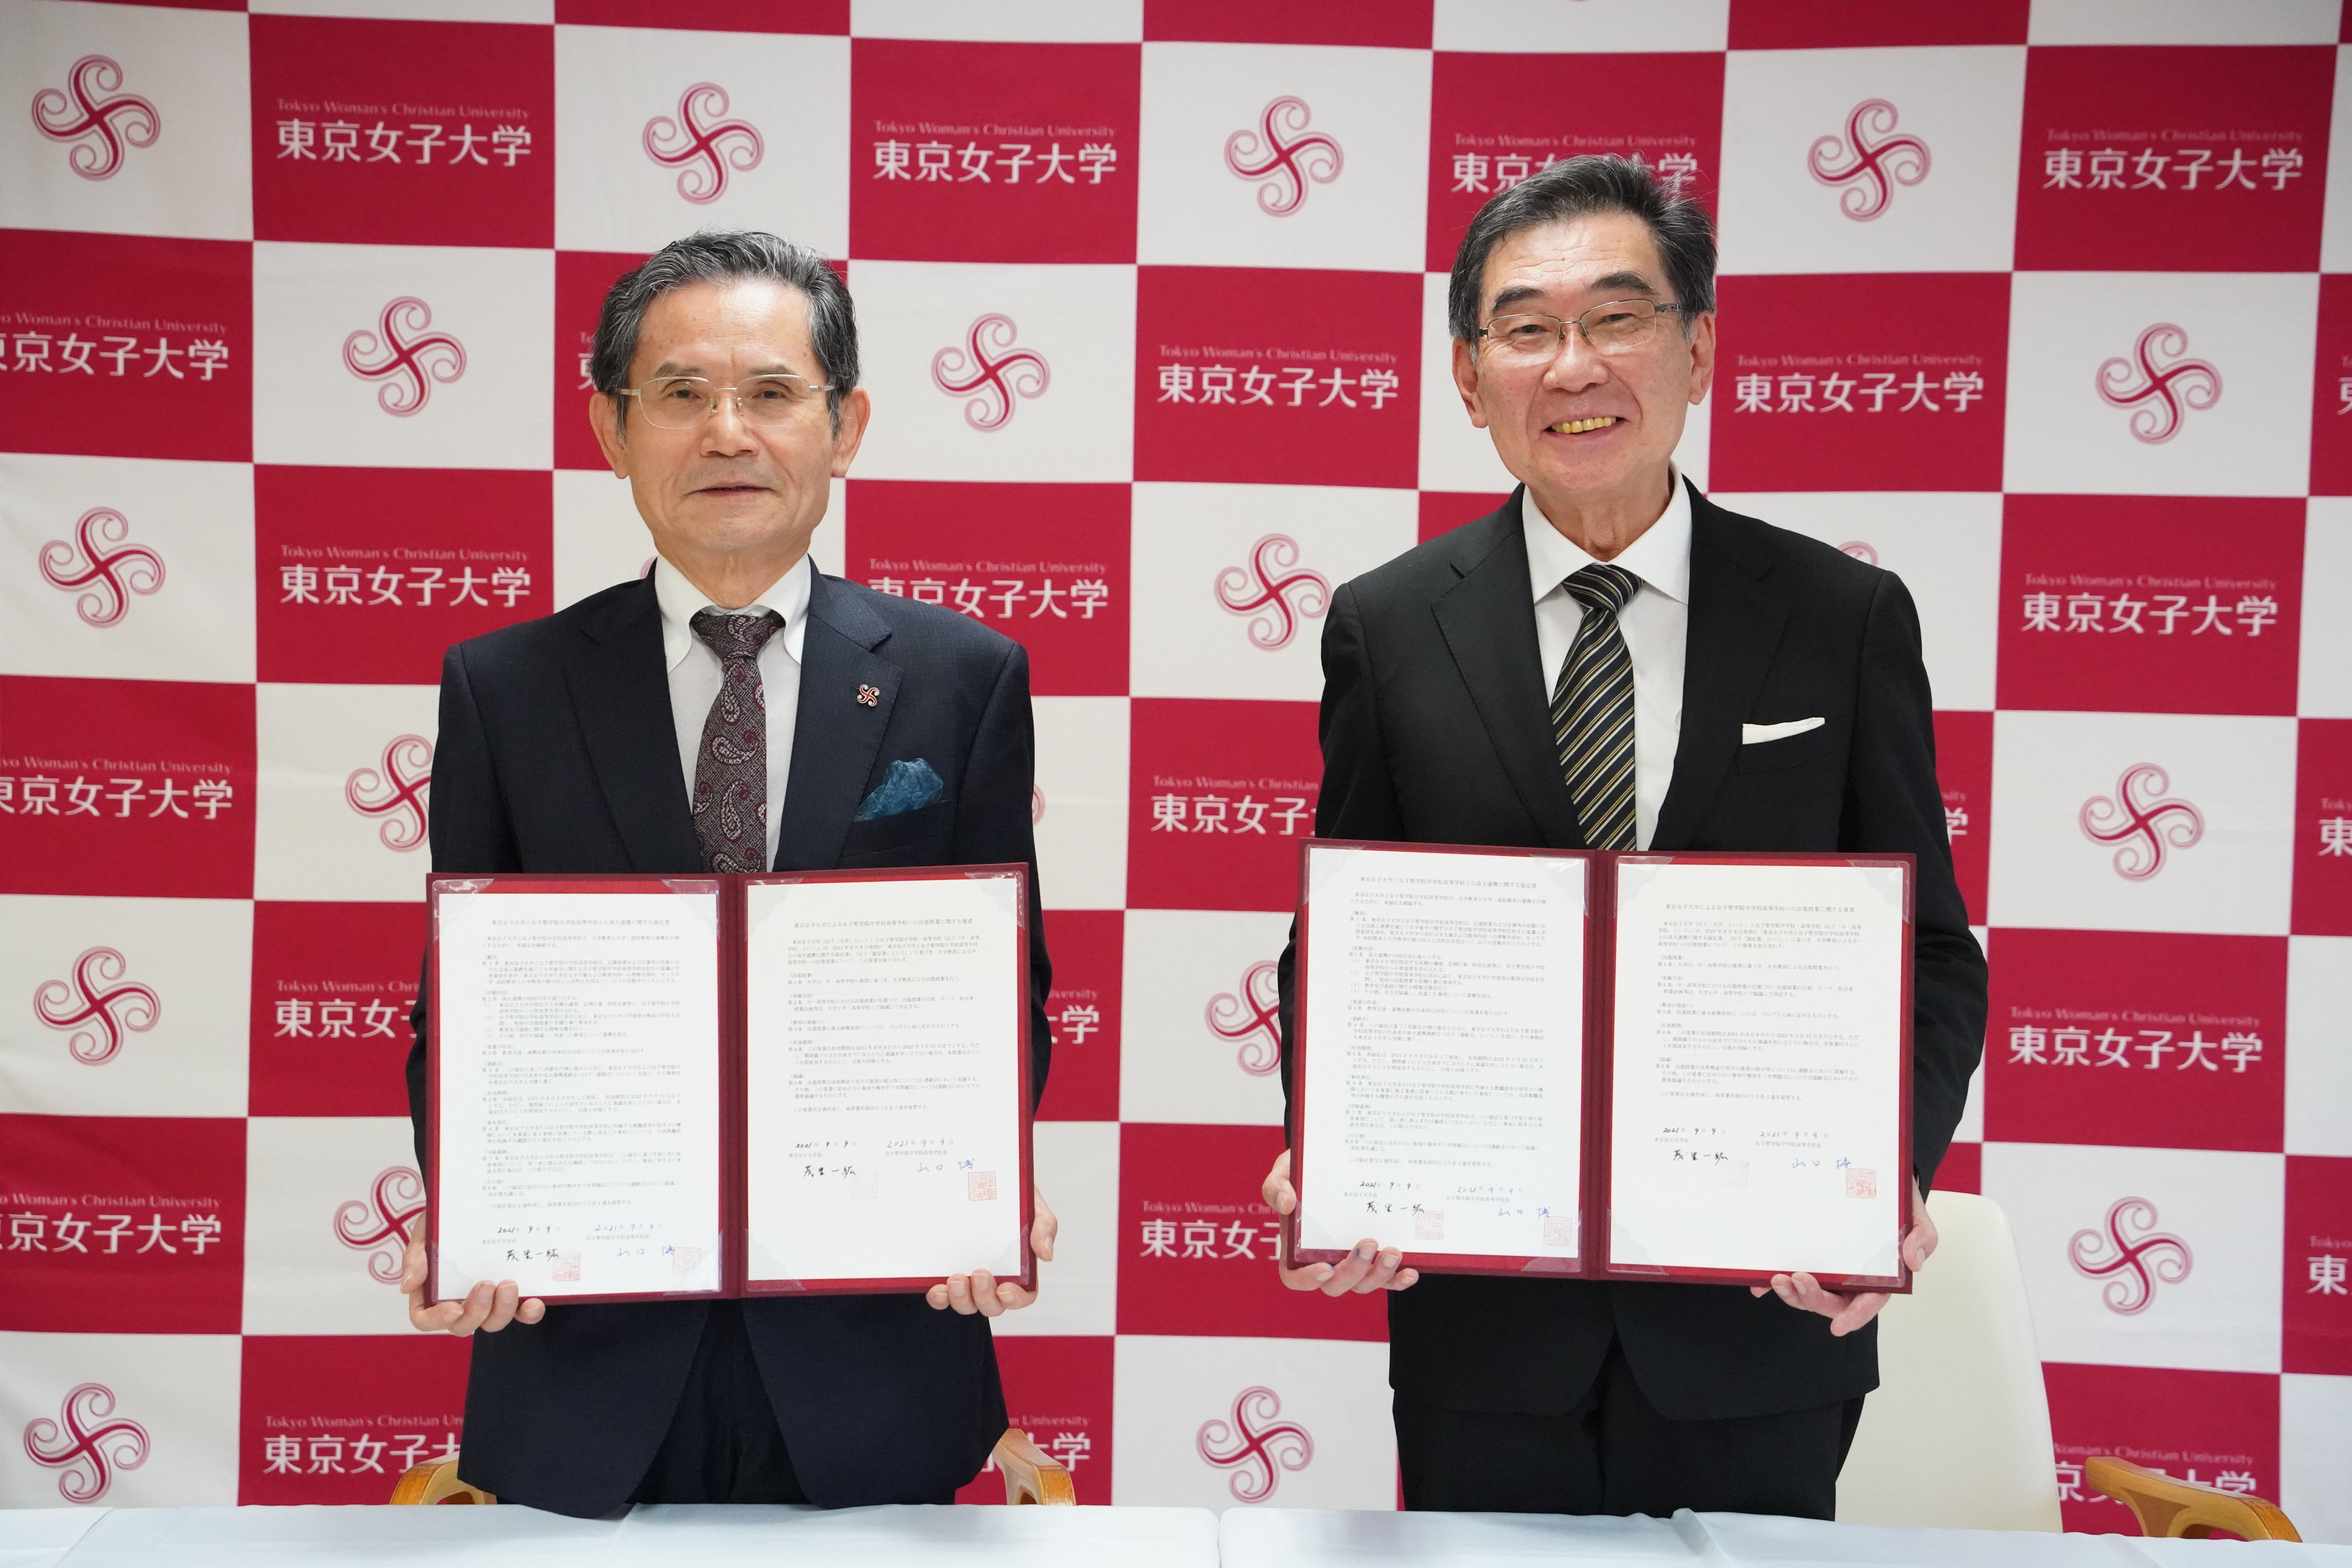 女子聖学院中高と東京女子大学が高大連携協定を締結。9月9日(木)、調印式が行われました。